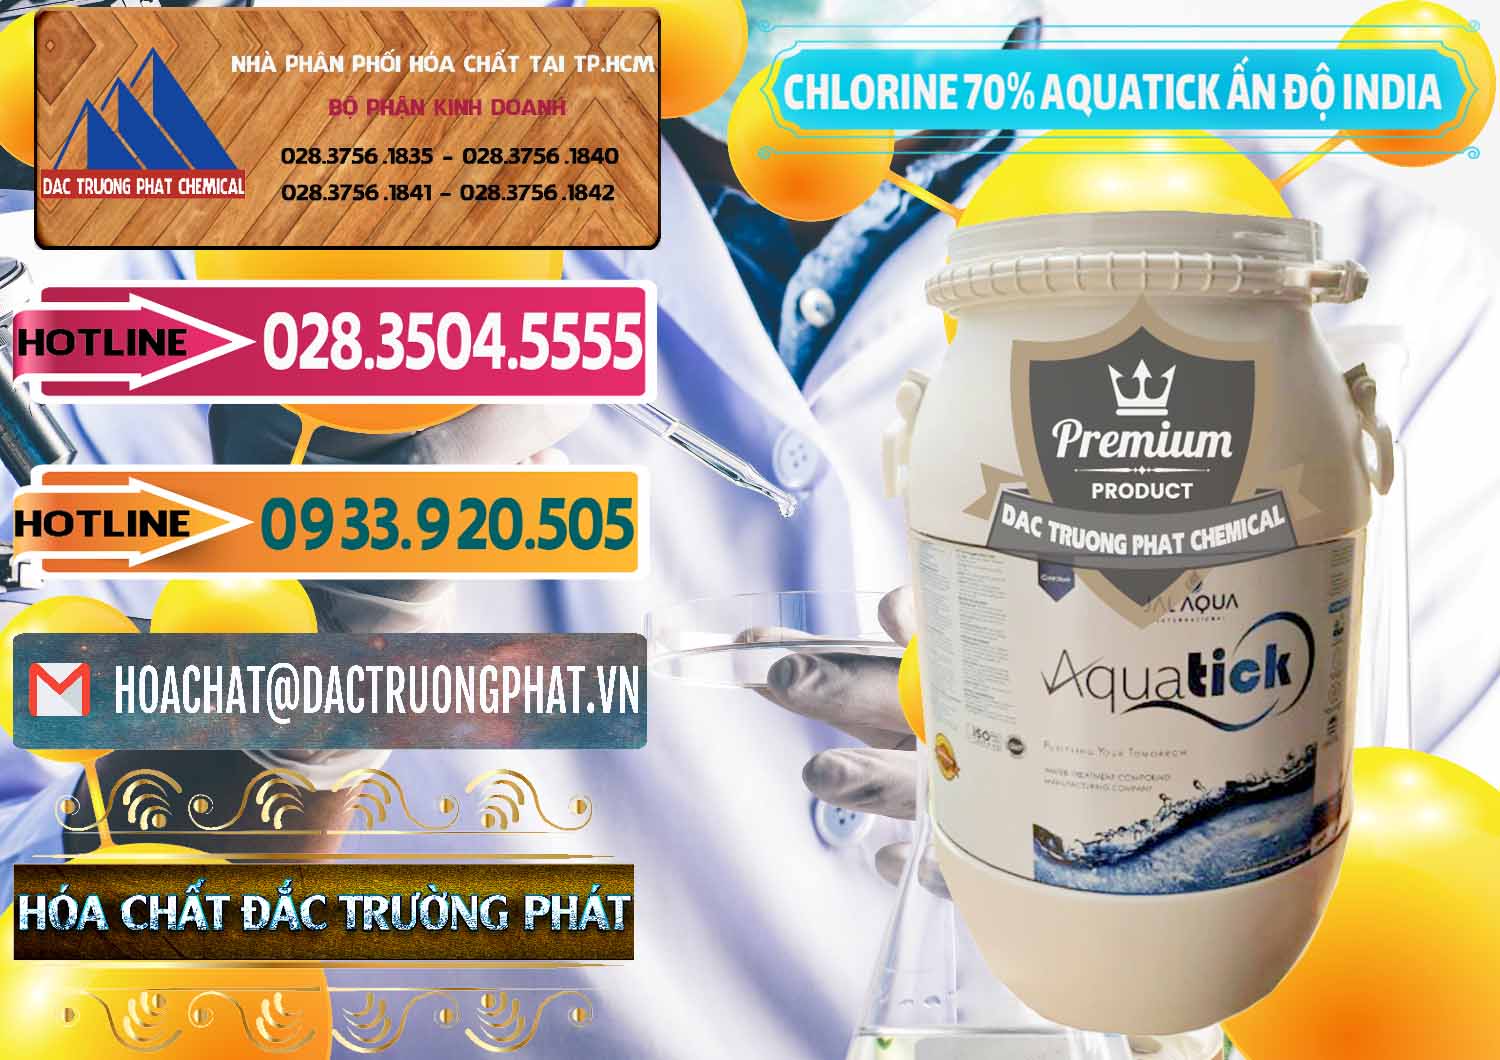 Nhà cung ứng & bán Chlorine – Clorin 70% Aquatick Jal Aqua Ấn Độ India - 0215 - Nơi chuyên kinh doanh ( cung cấp ) hóa chất tại TP.HCM - dactruongphat.vn